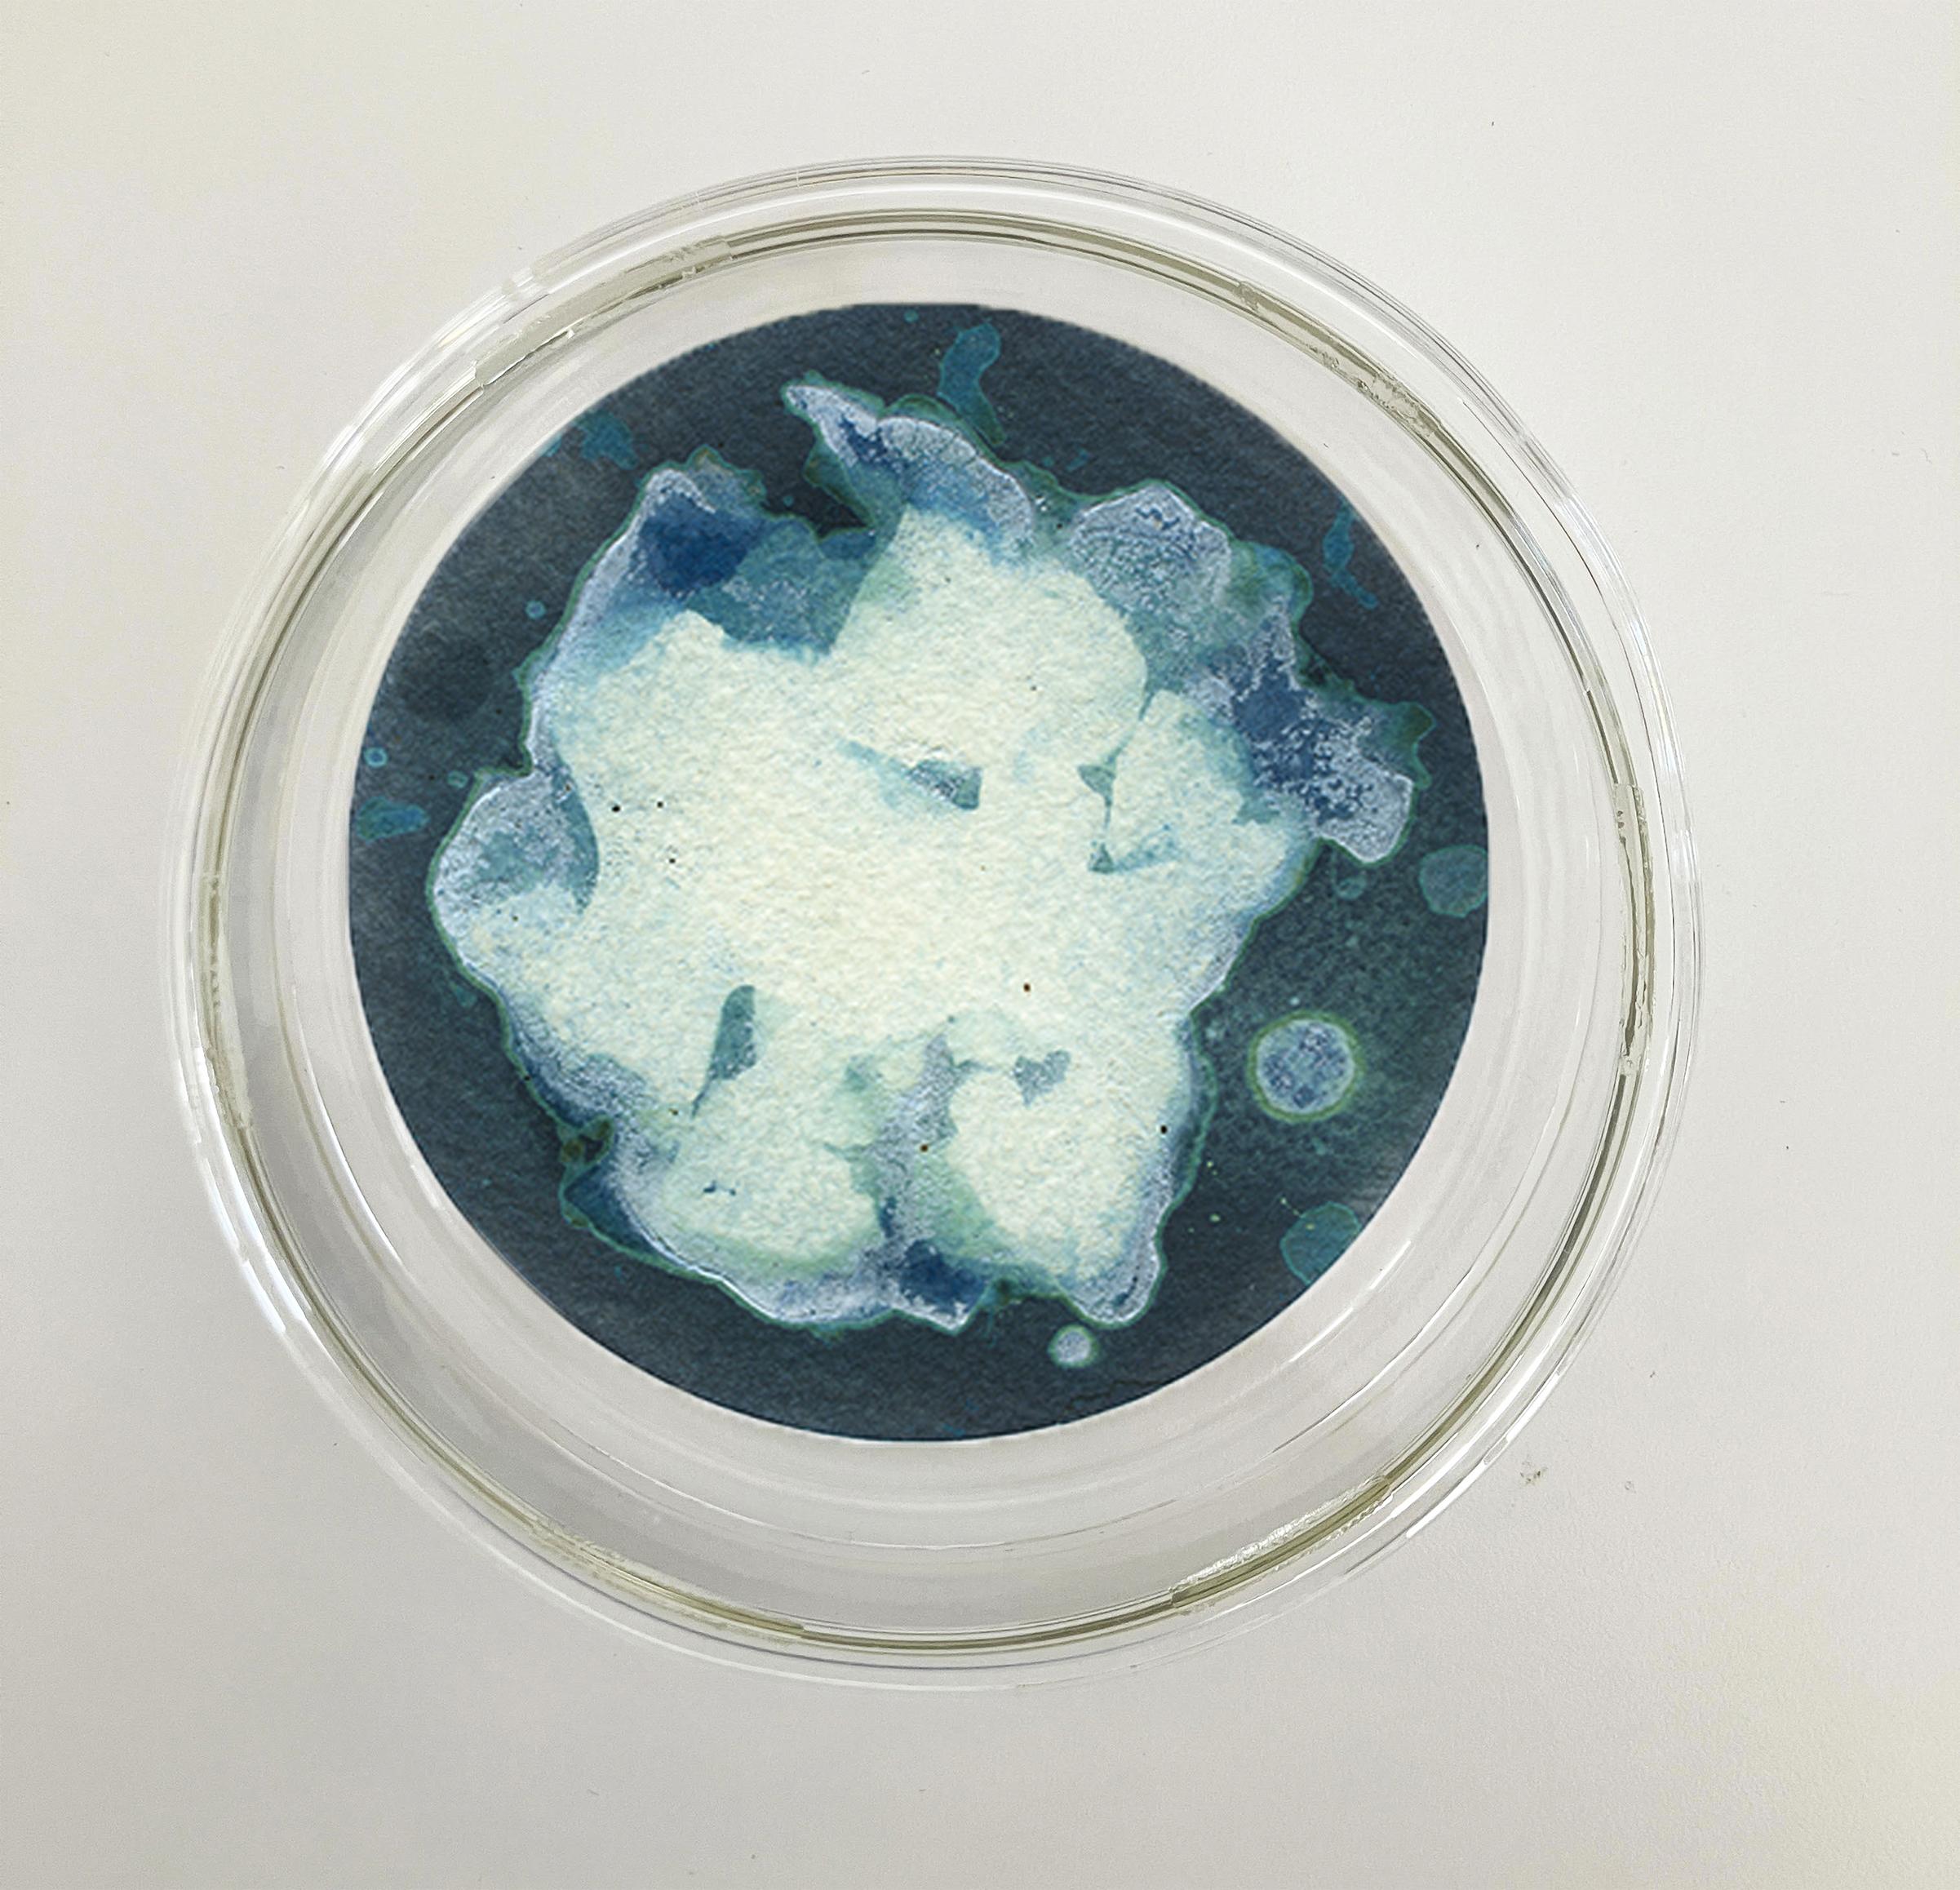 22, 23 und 24. Cyanotypie-Fotografien, montiert in einer hochfesten Glasschale im Angebot 1